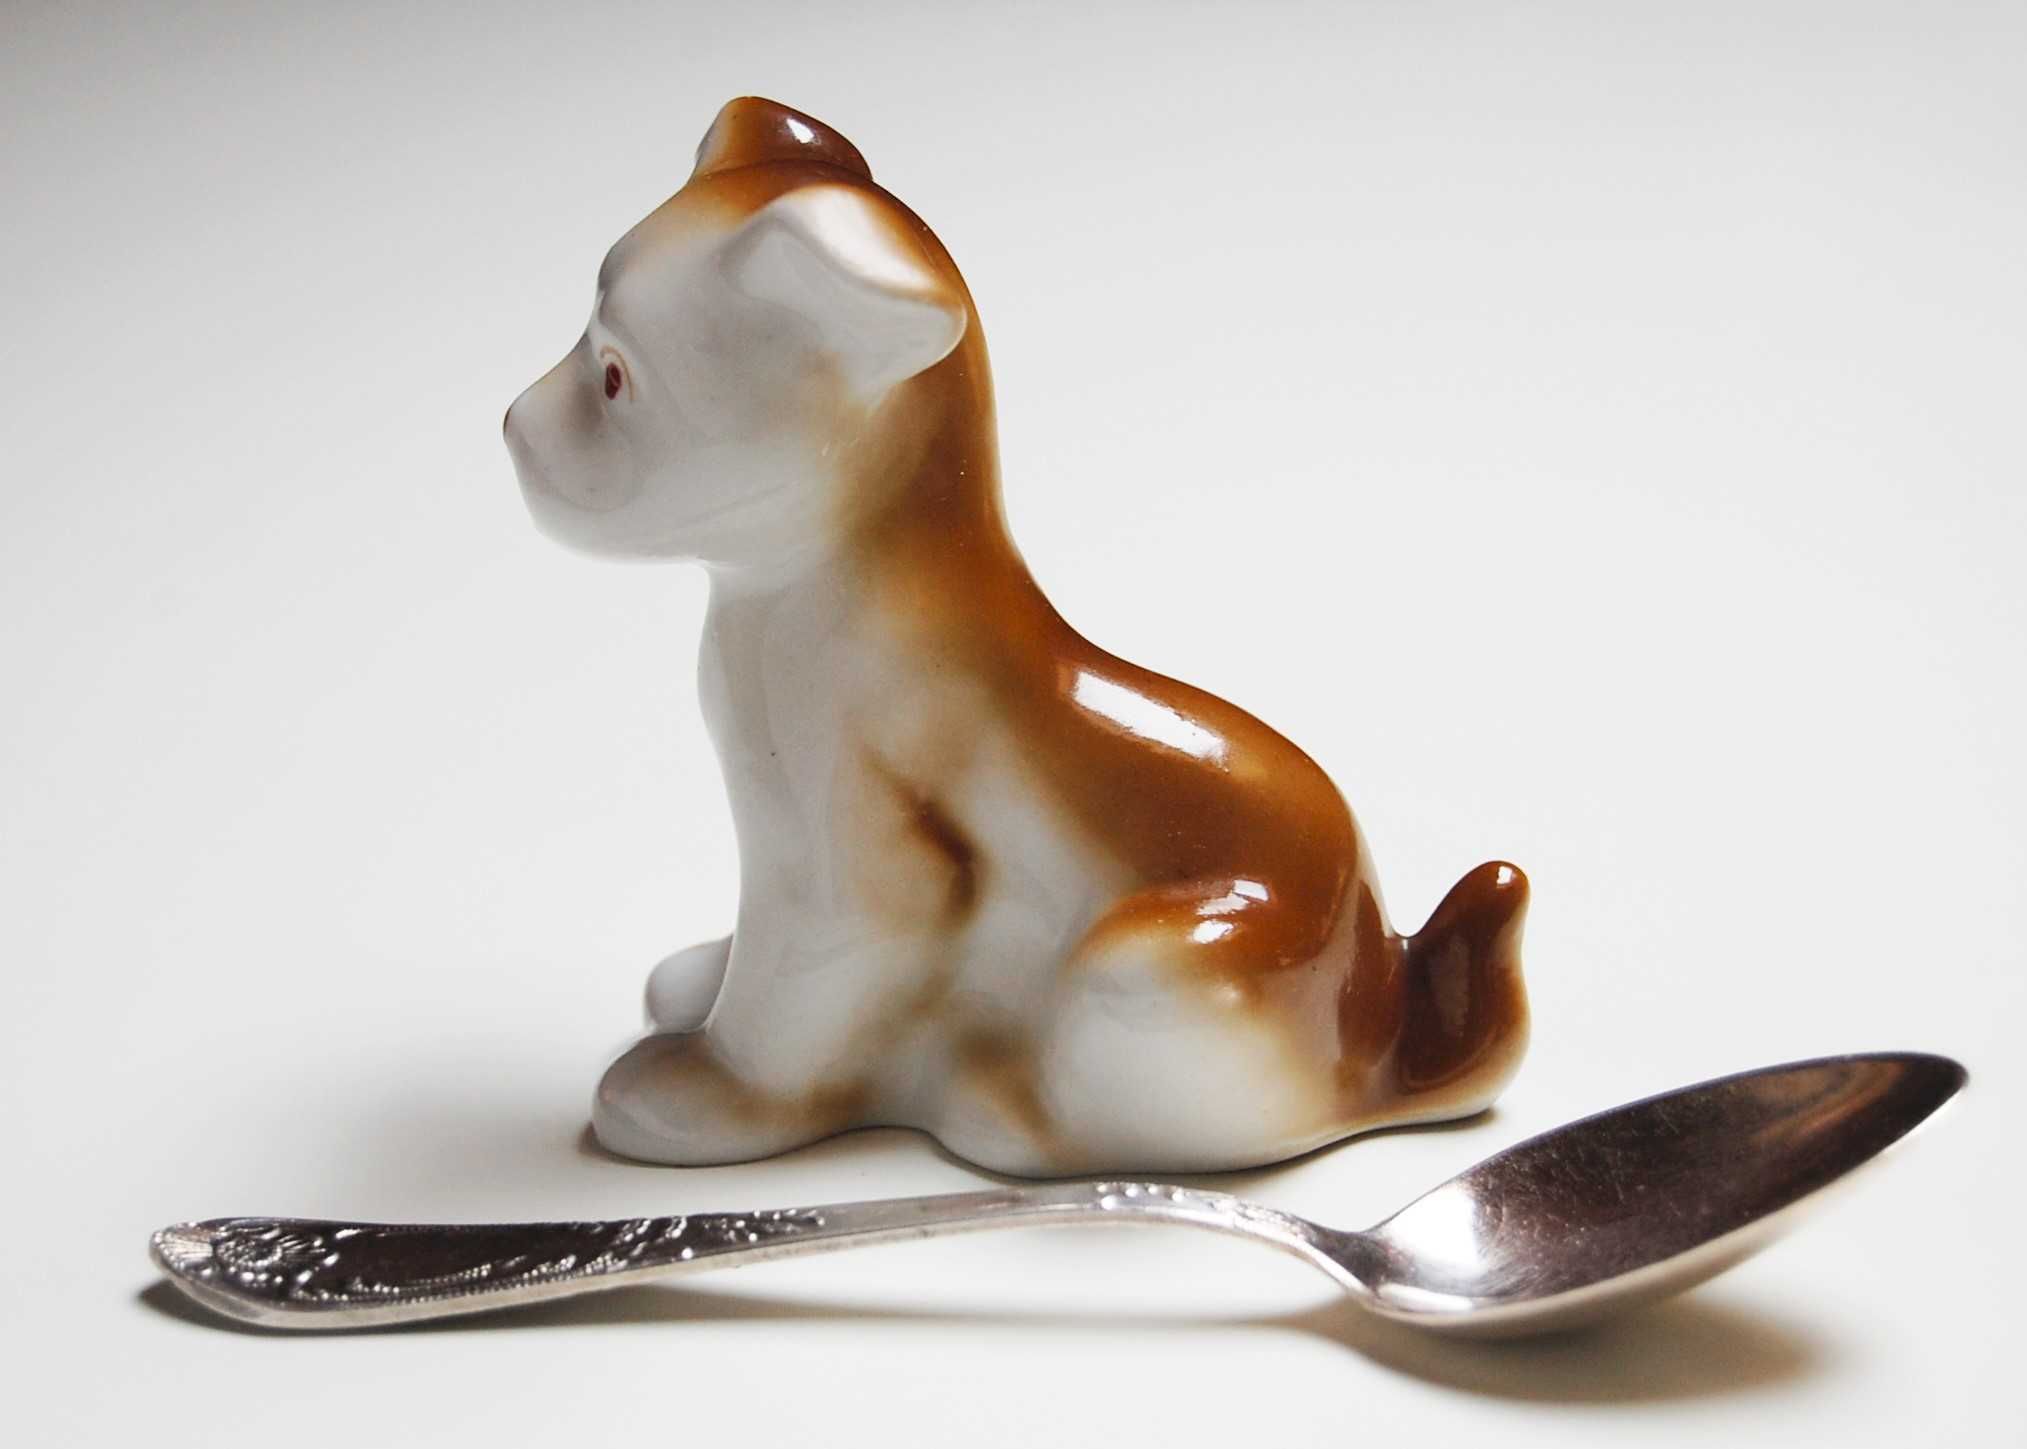 Piesek, pies, porcelana Połonne, Wołyń, Ukraina, figurka porcelanowa